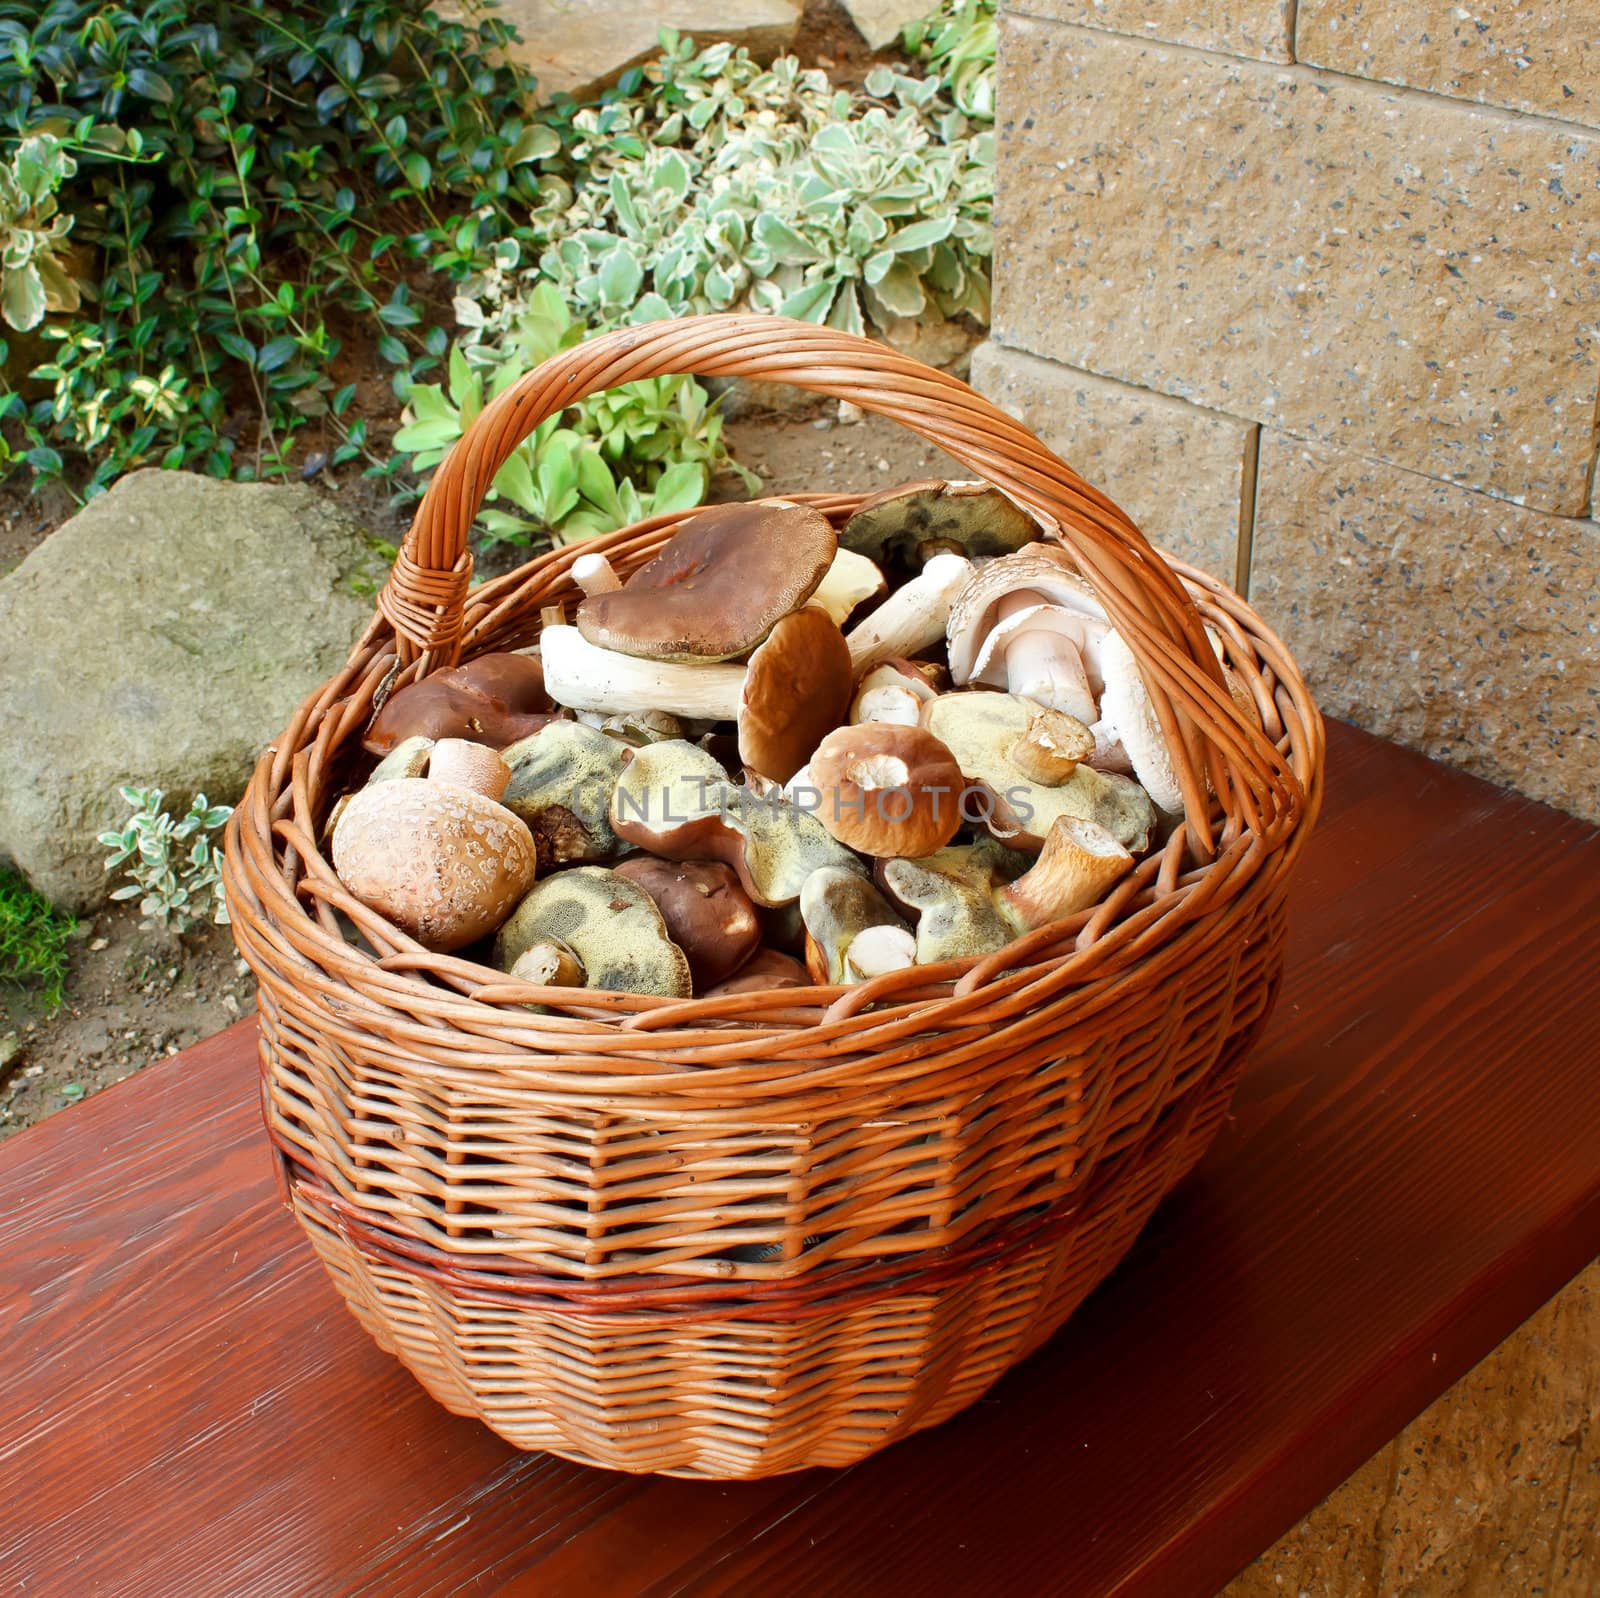 Full basket of fresh autumn mushroom, founded in forest